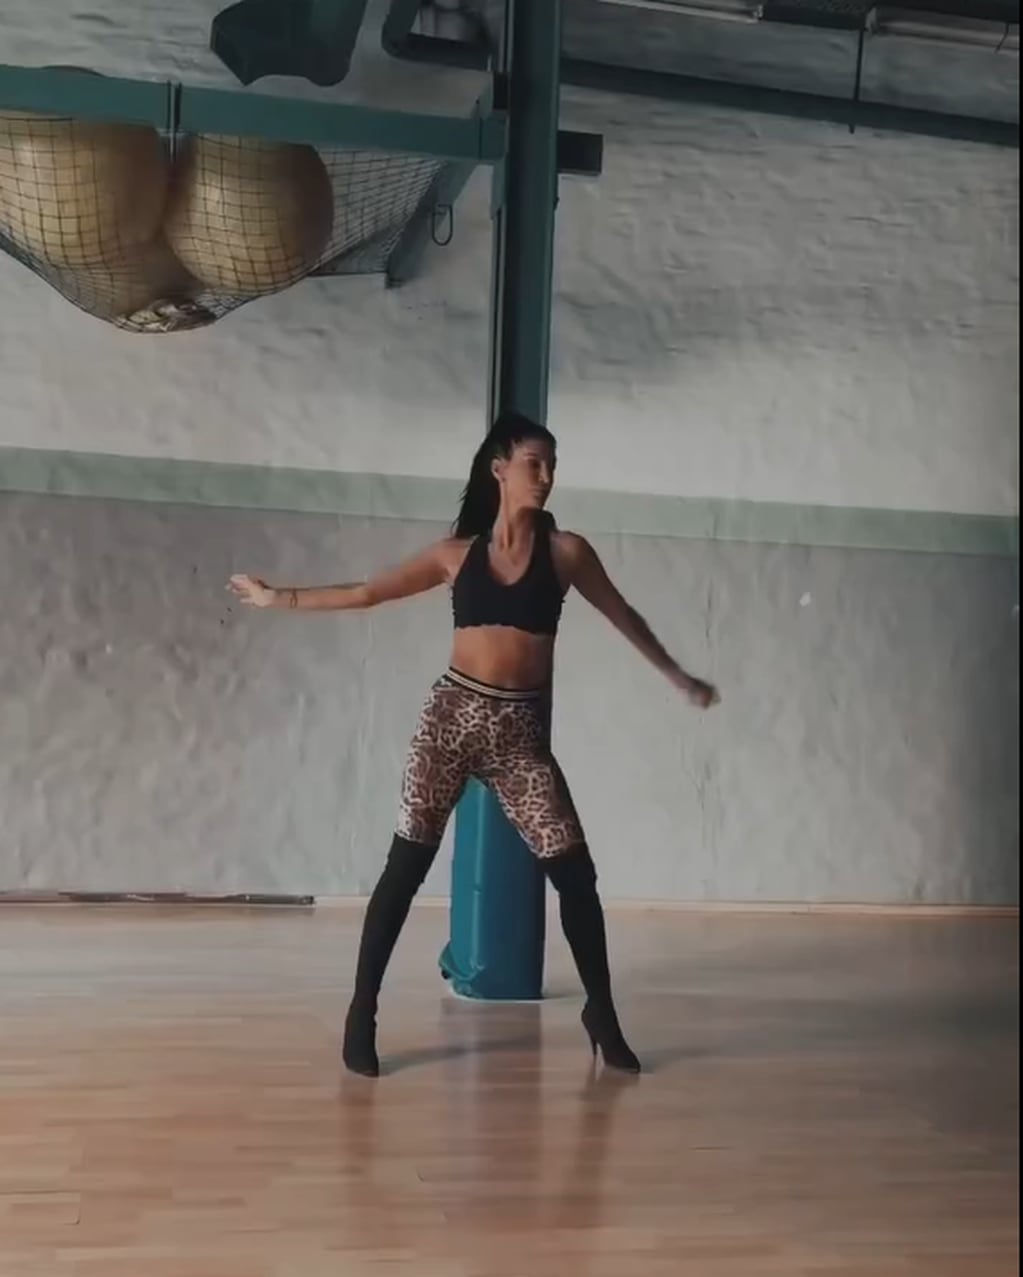 Silvina Escudero apostó por unas calzas animal print y deslumbró con una coreografía ultra sexy